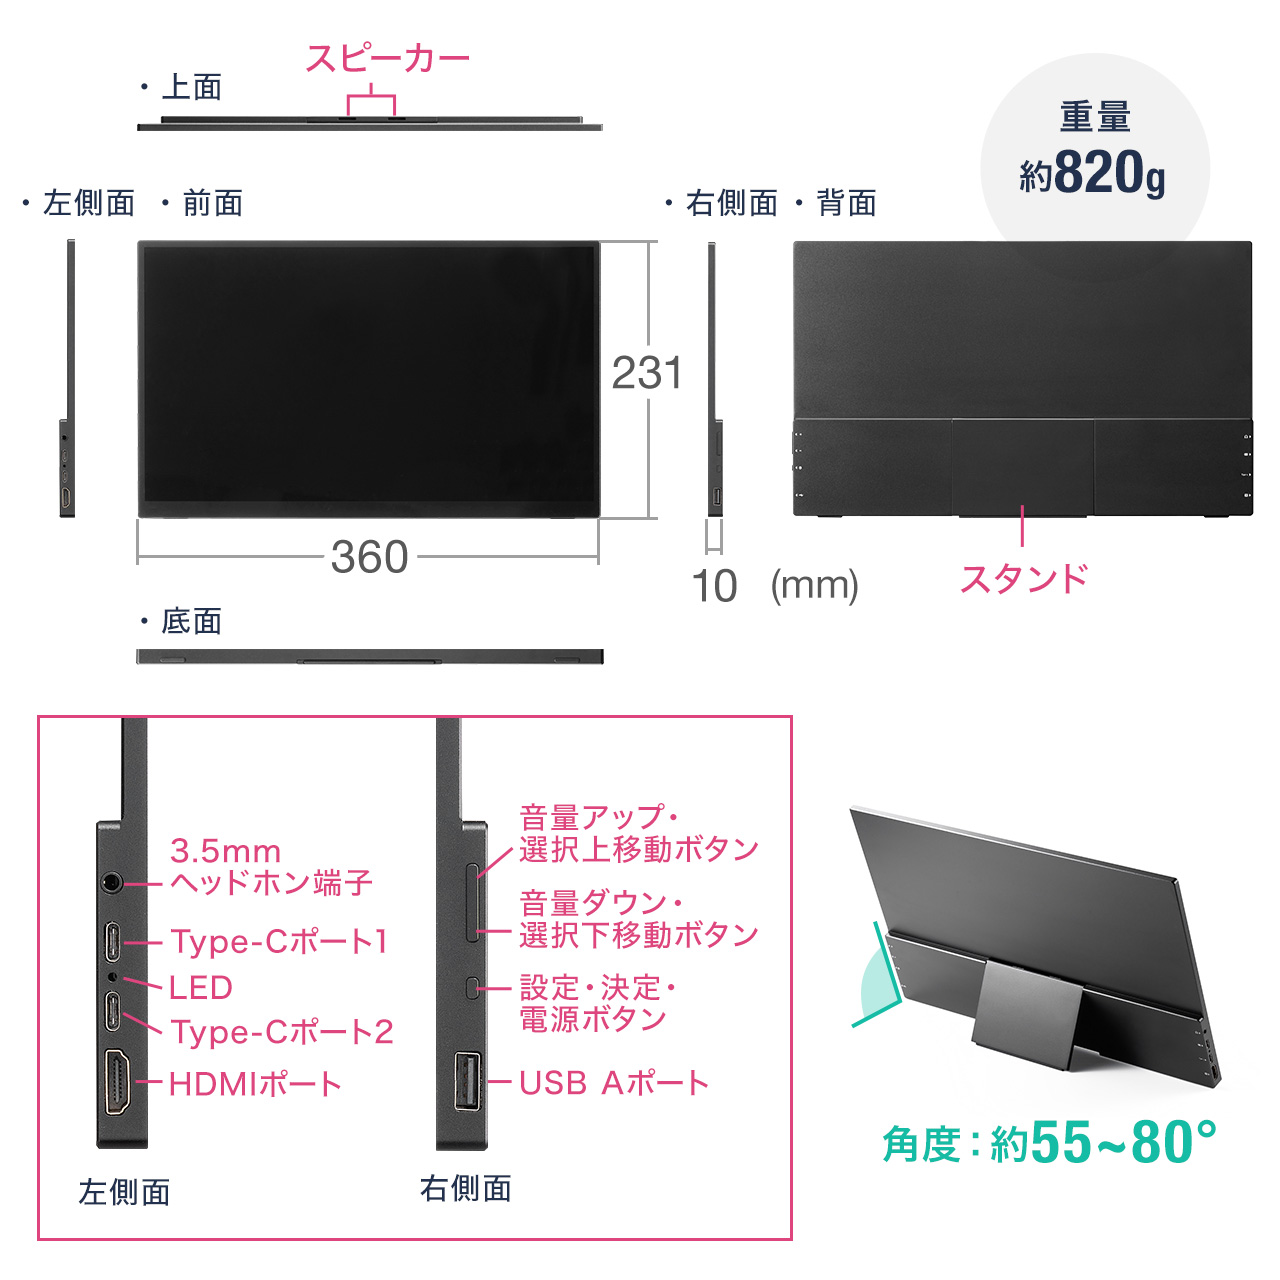 モバイルモニター 16.1インチ 1920x1080FHD タッチパネル スタンドカバー付き type-c接続 HDMI フルHD Nintendo Switch スイッチ対応 Fire Stick対応 400-LCD003